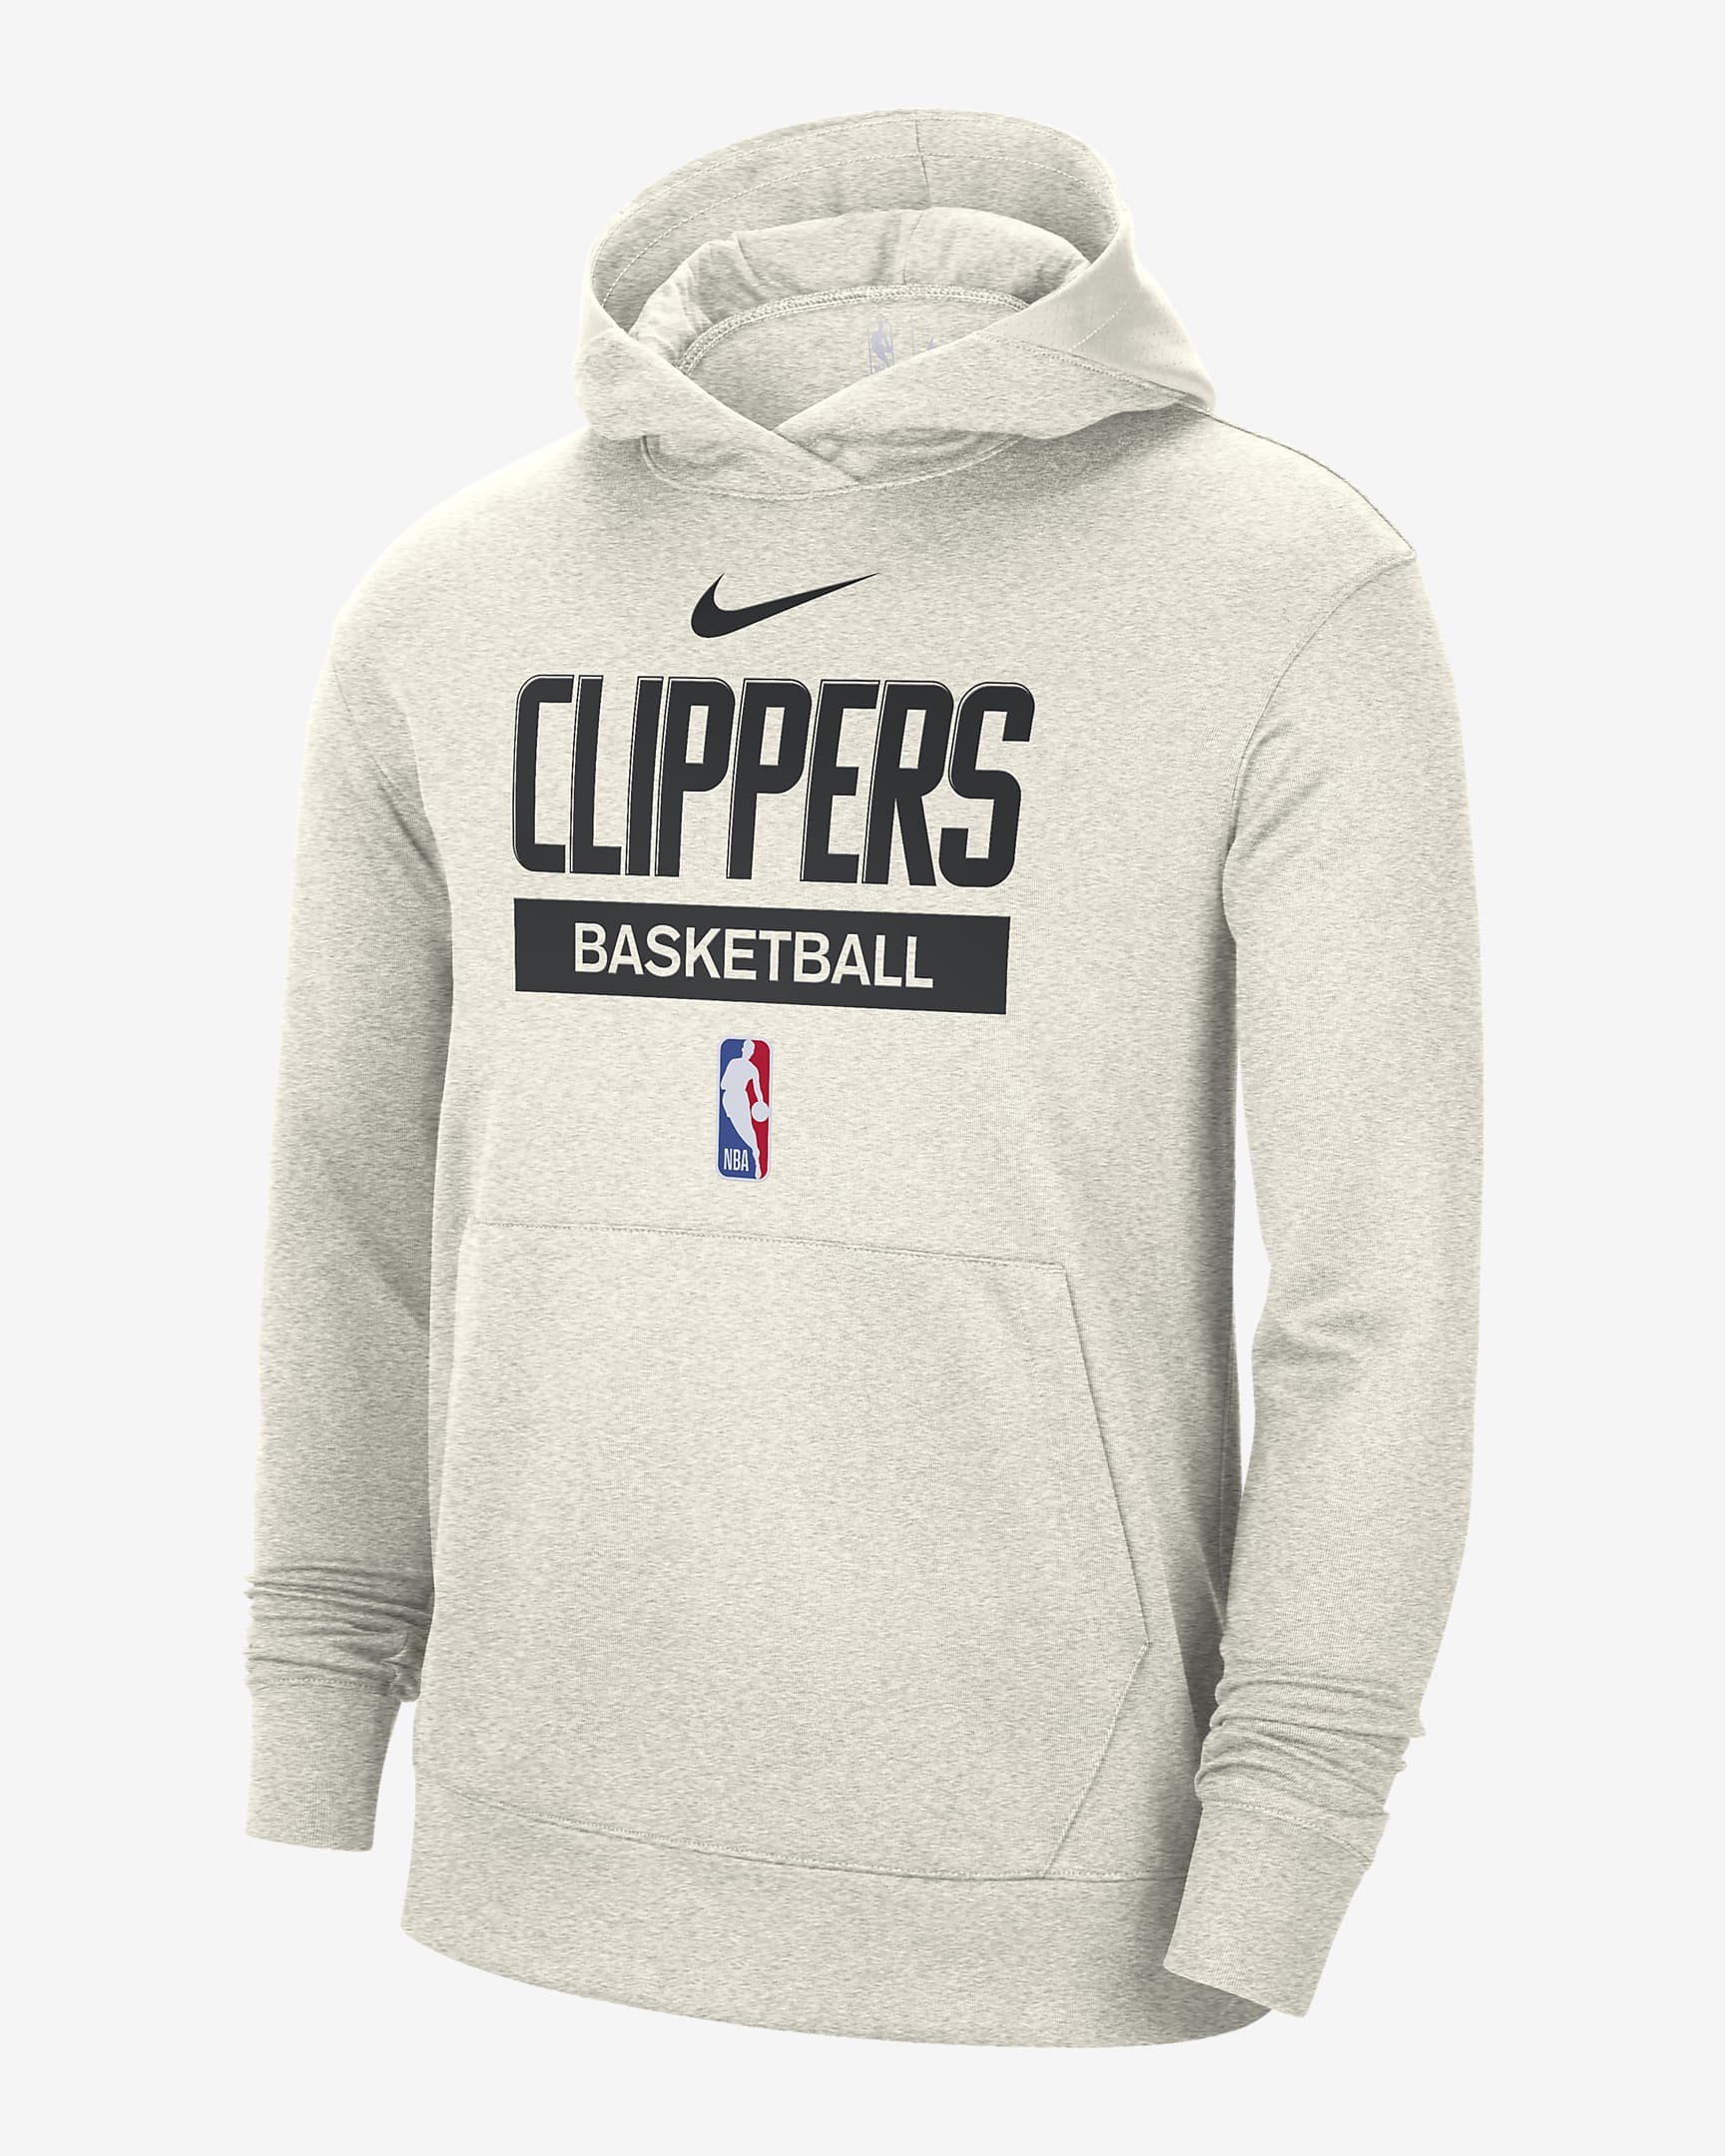 Detroit Pistons Nike Full Zip Hoodie Sweatshirt Mens Large Navy NBA Dri-Fit